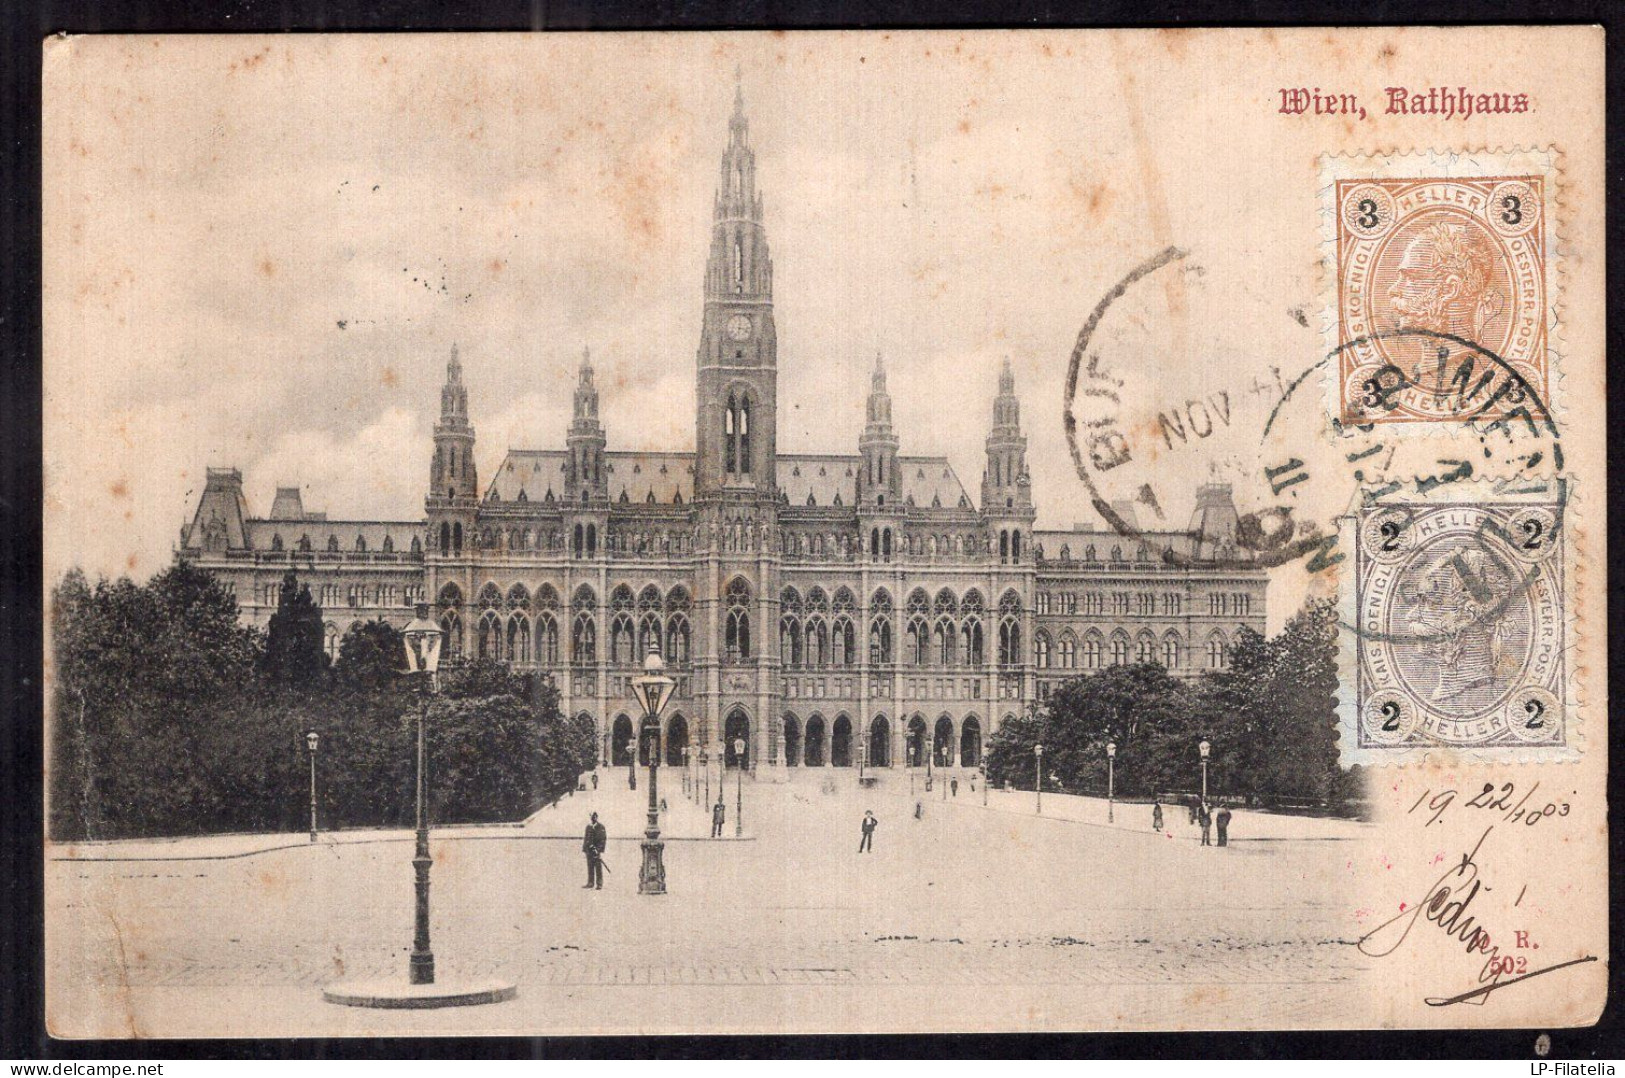 Österreich - 1908 - Wien - Rathhaus - Wien Mitte